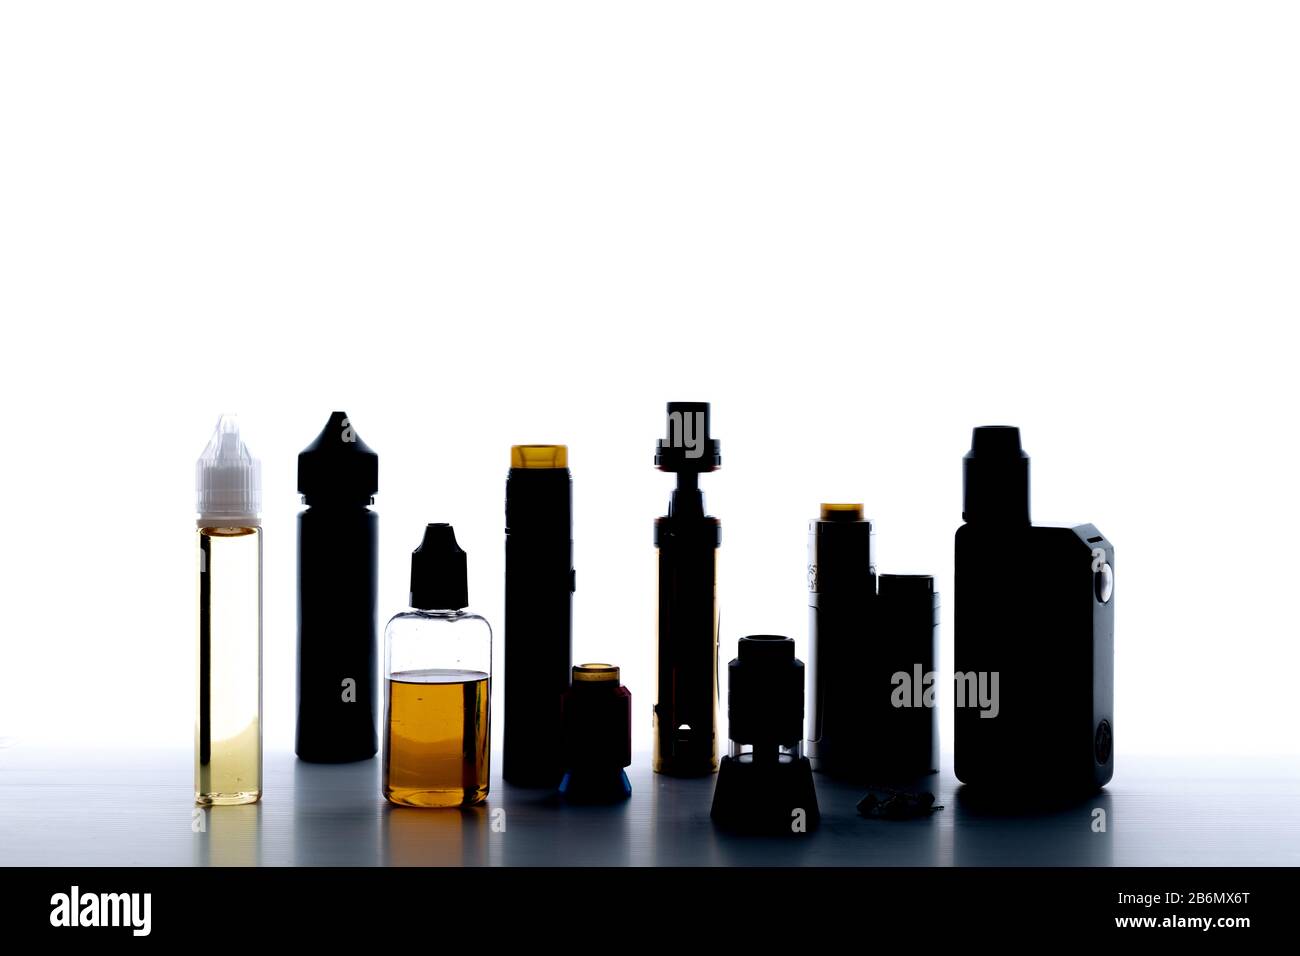 Retroiluminado imagen de cigarrillos electrónicos diferentes con vape de fondo blanco vaping máquinas Foto de stock